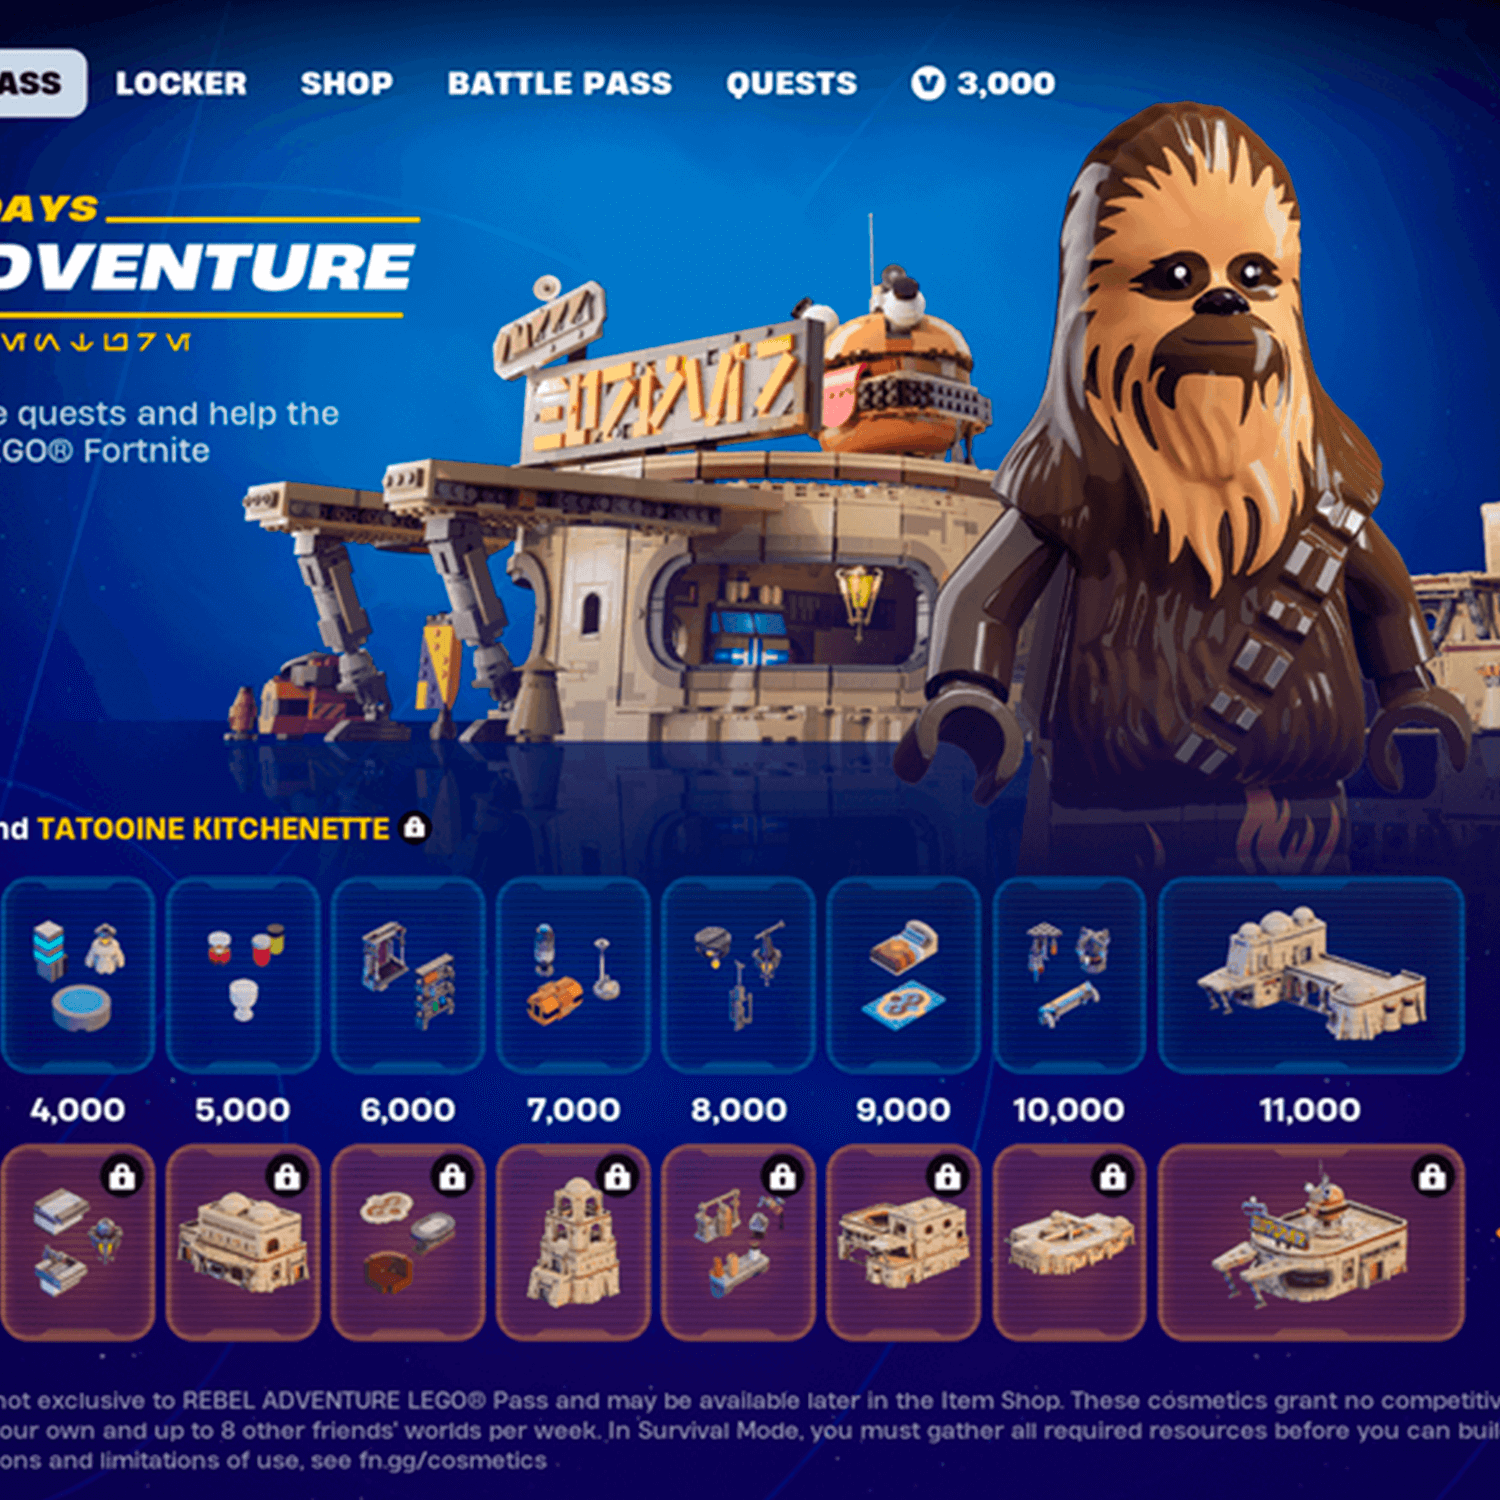 LEGO Fortnite x Star Wars: Pase de aventura rebelde, misiones y recompensas